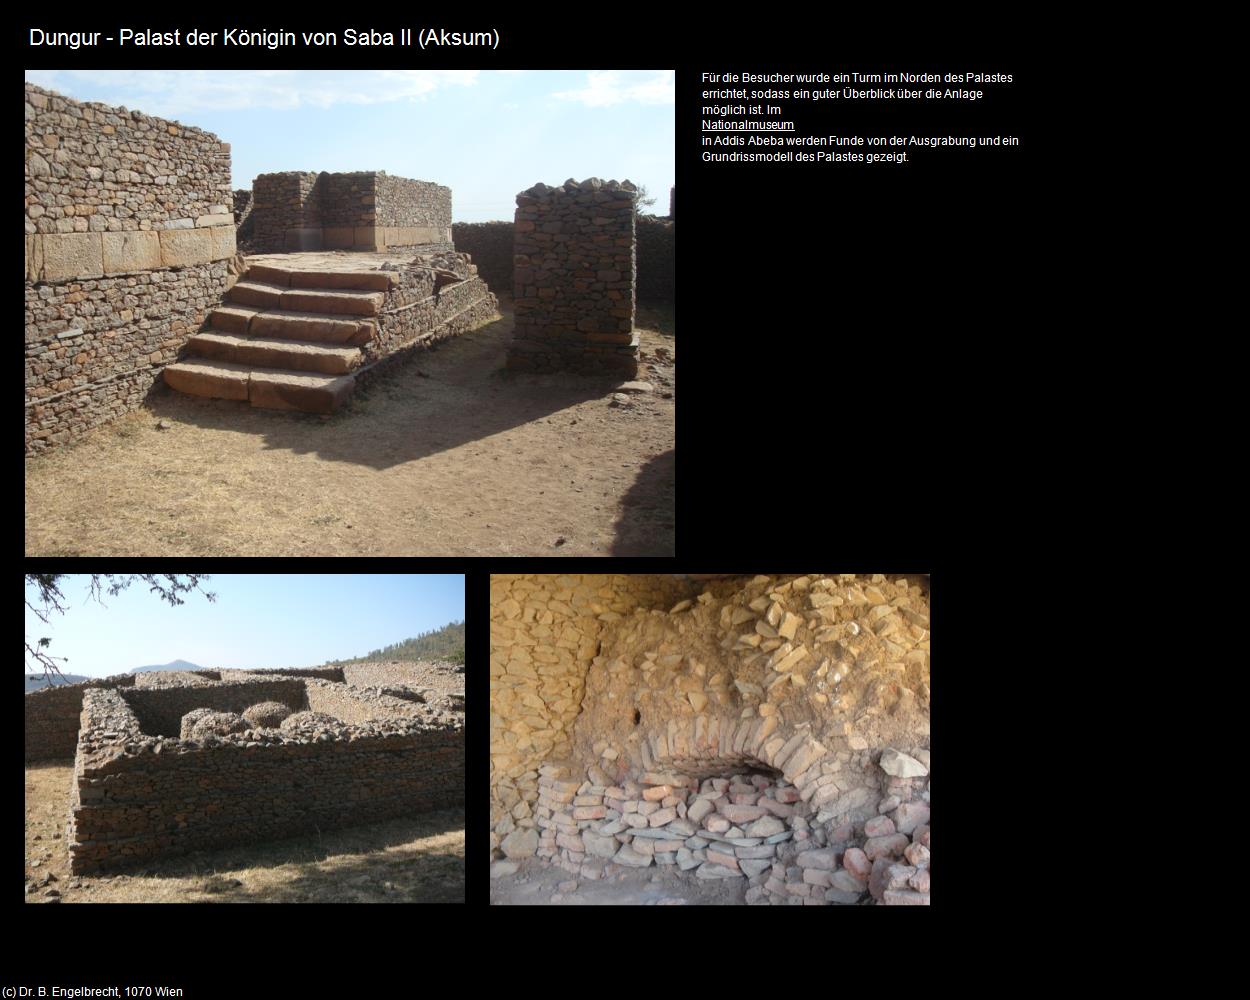 Dungur - Palast der Königin von Saba II (Aksum) in Äthiopien(c)B.Engelbrecht